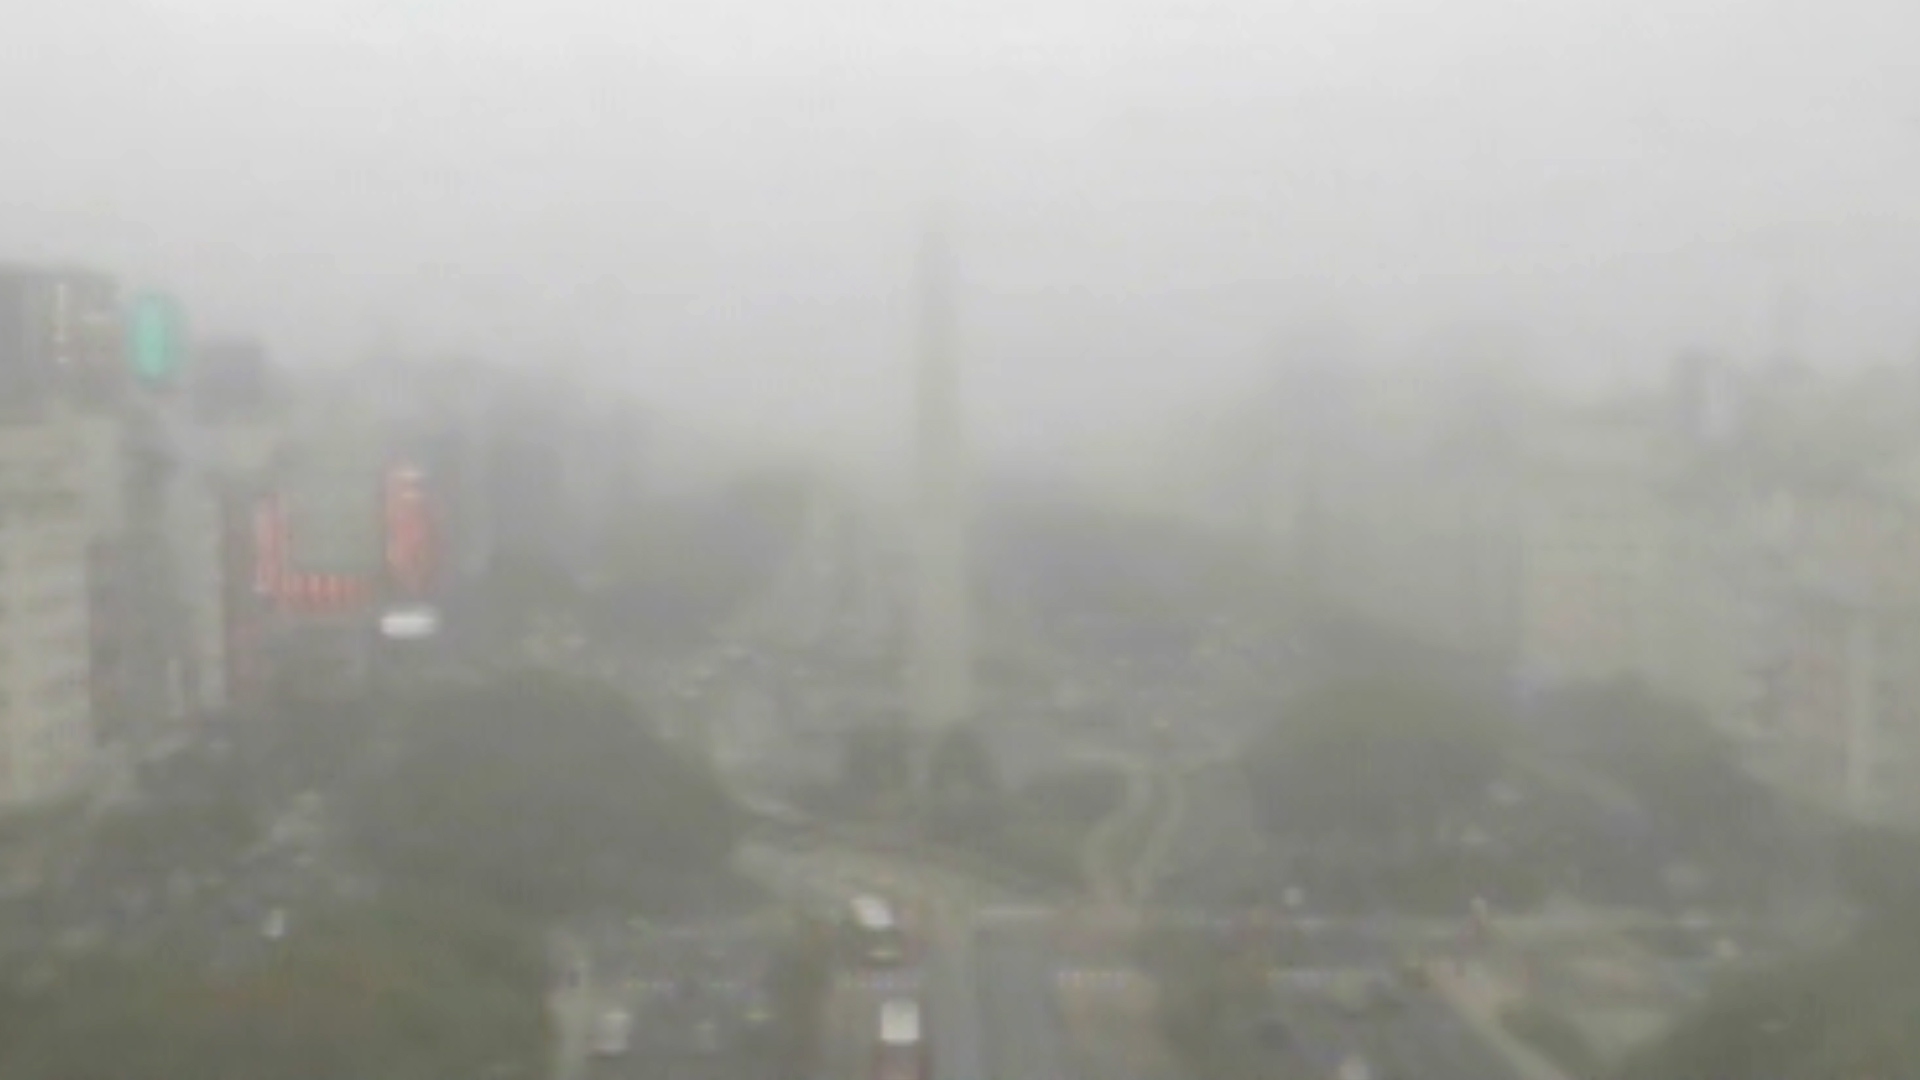 La Ciudad de Buenos Aires amaneció cubierta de niebla, dificultando seriamente la visibilidad de los automovilistas